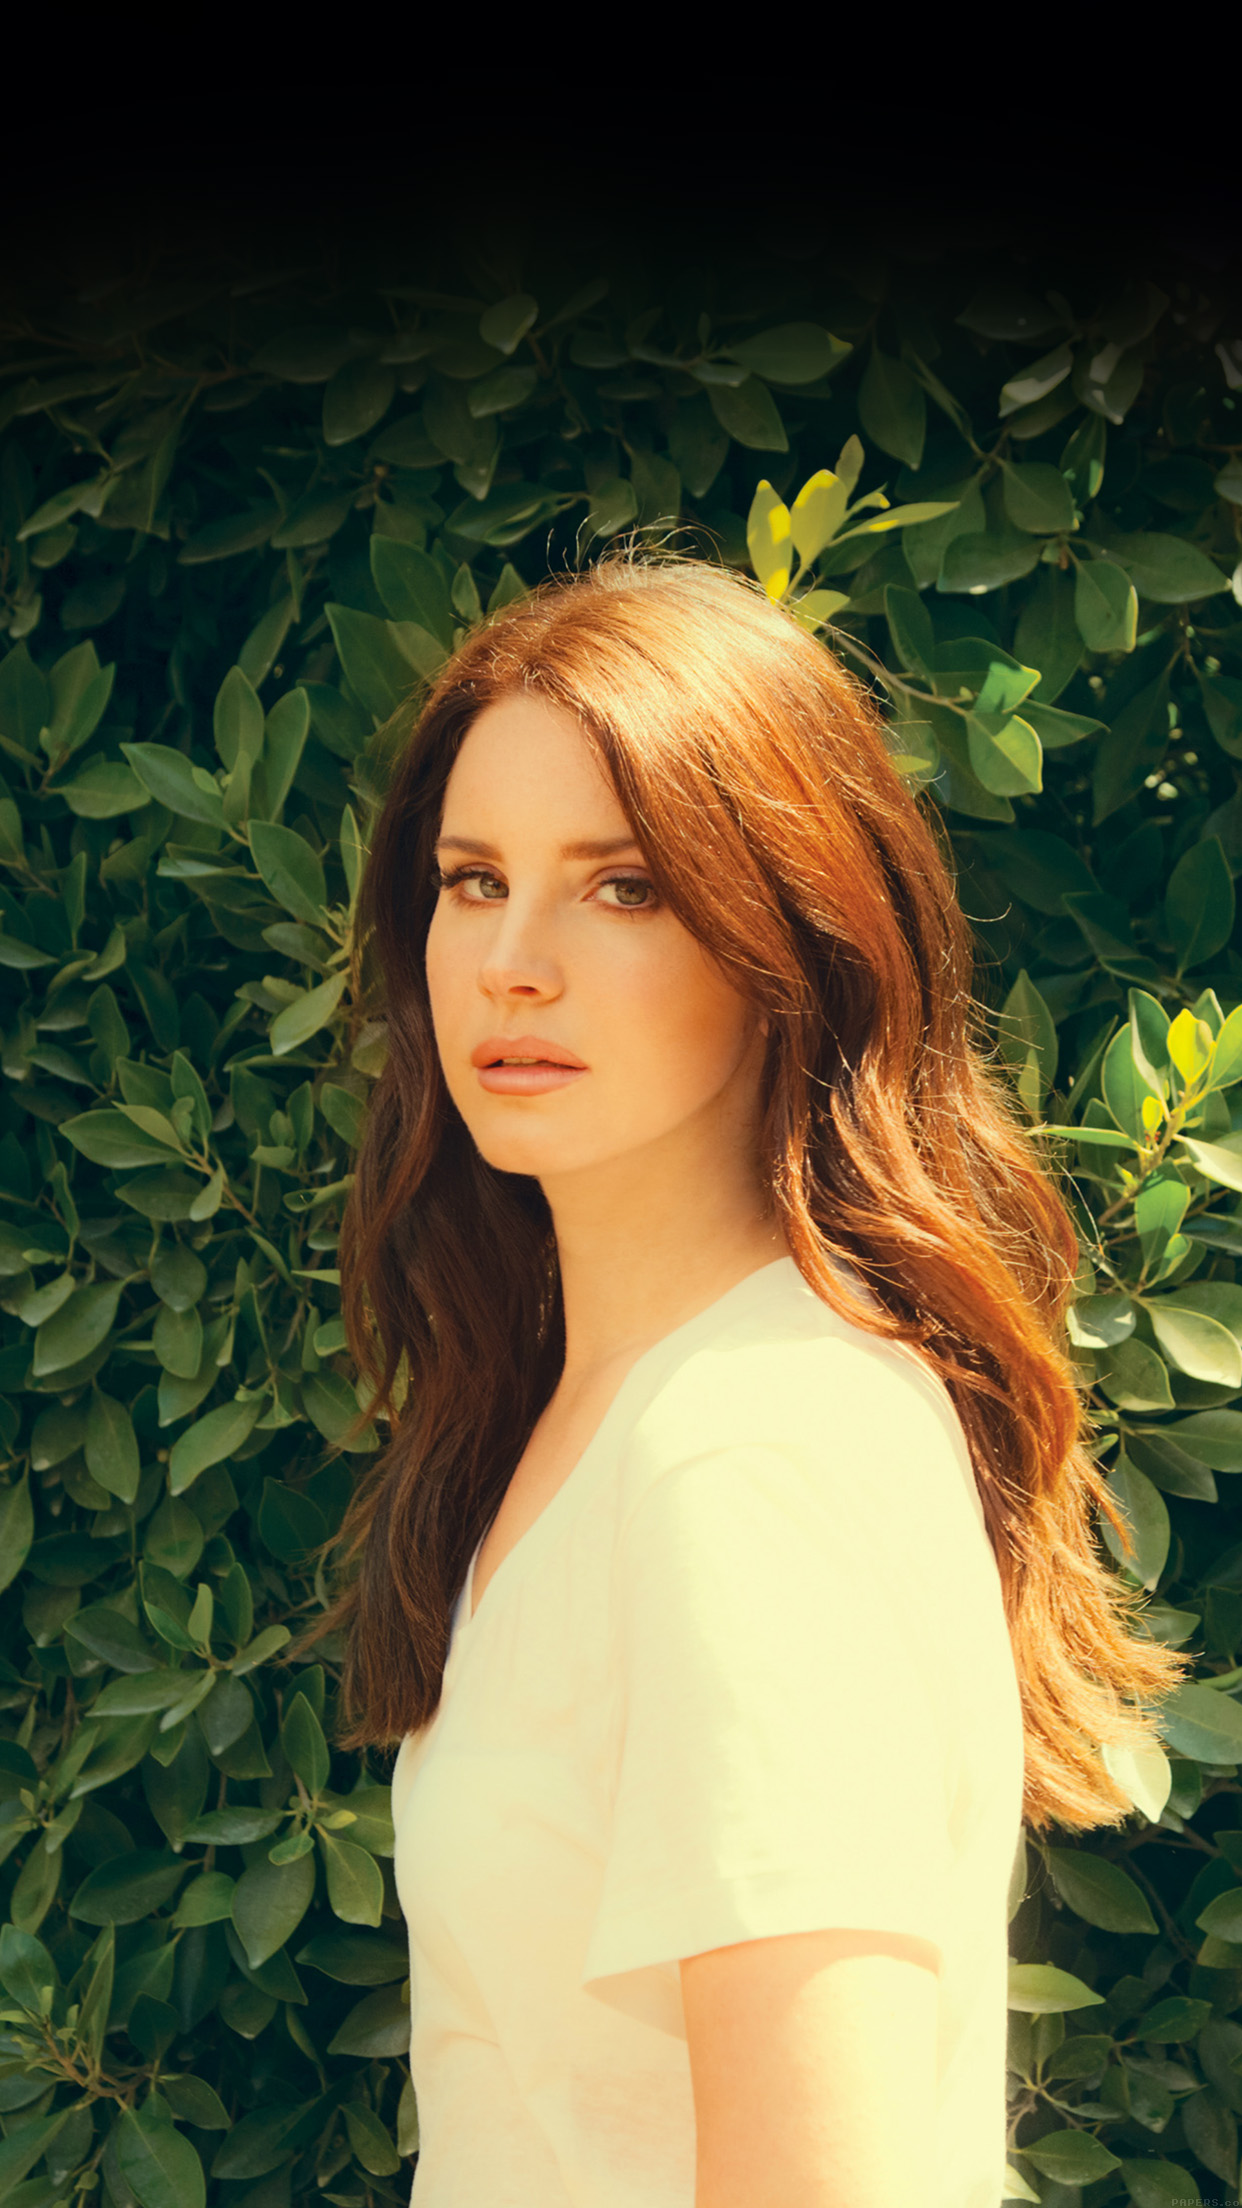 Iphone Xr Lana Del Rey - HD Wallpaper 